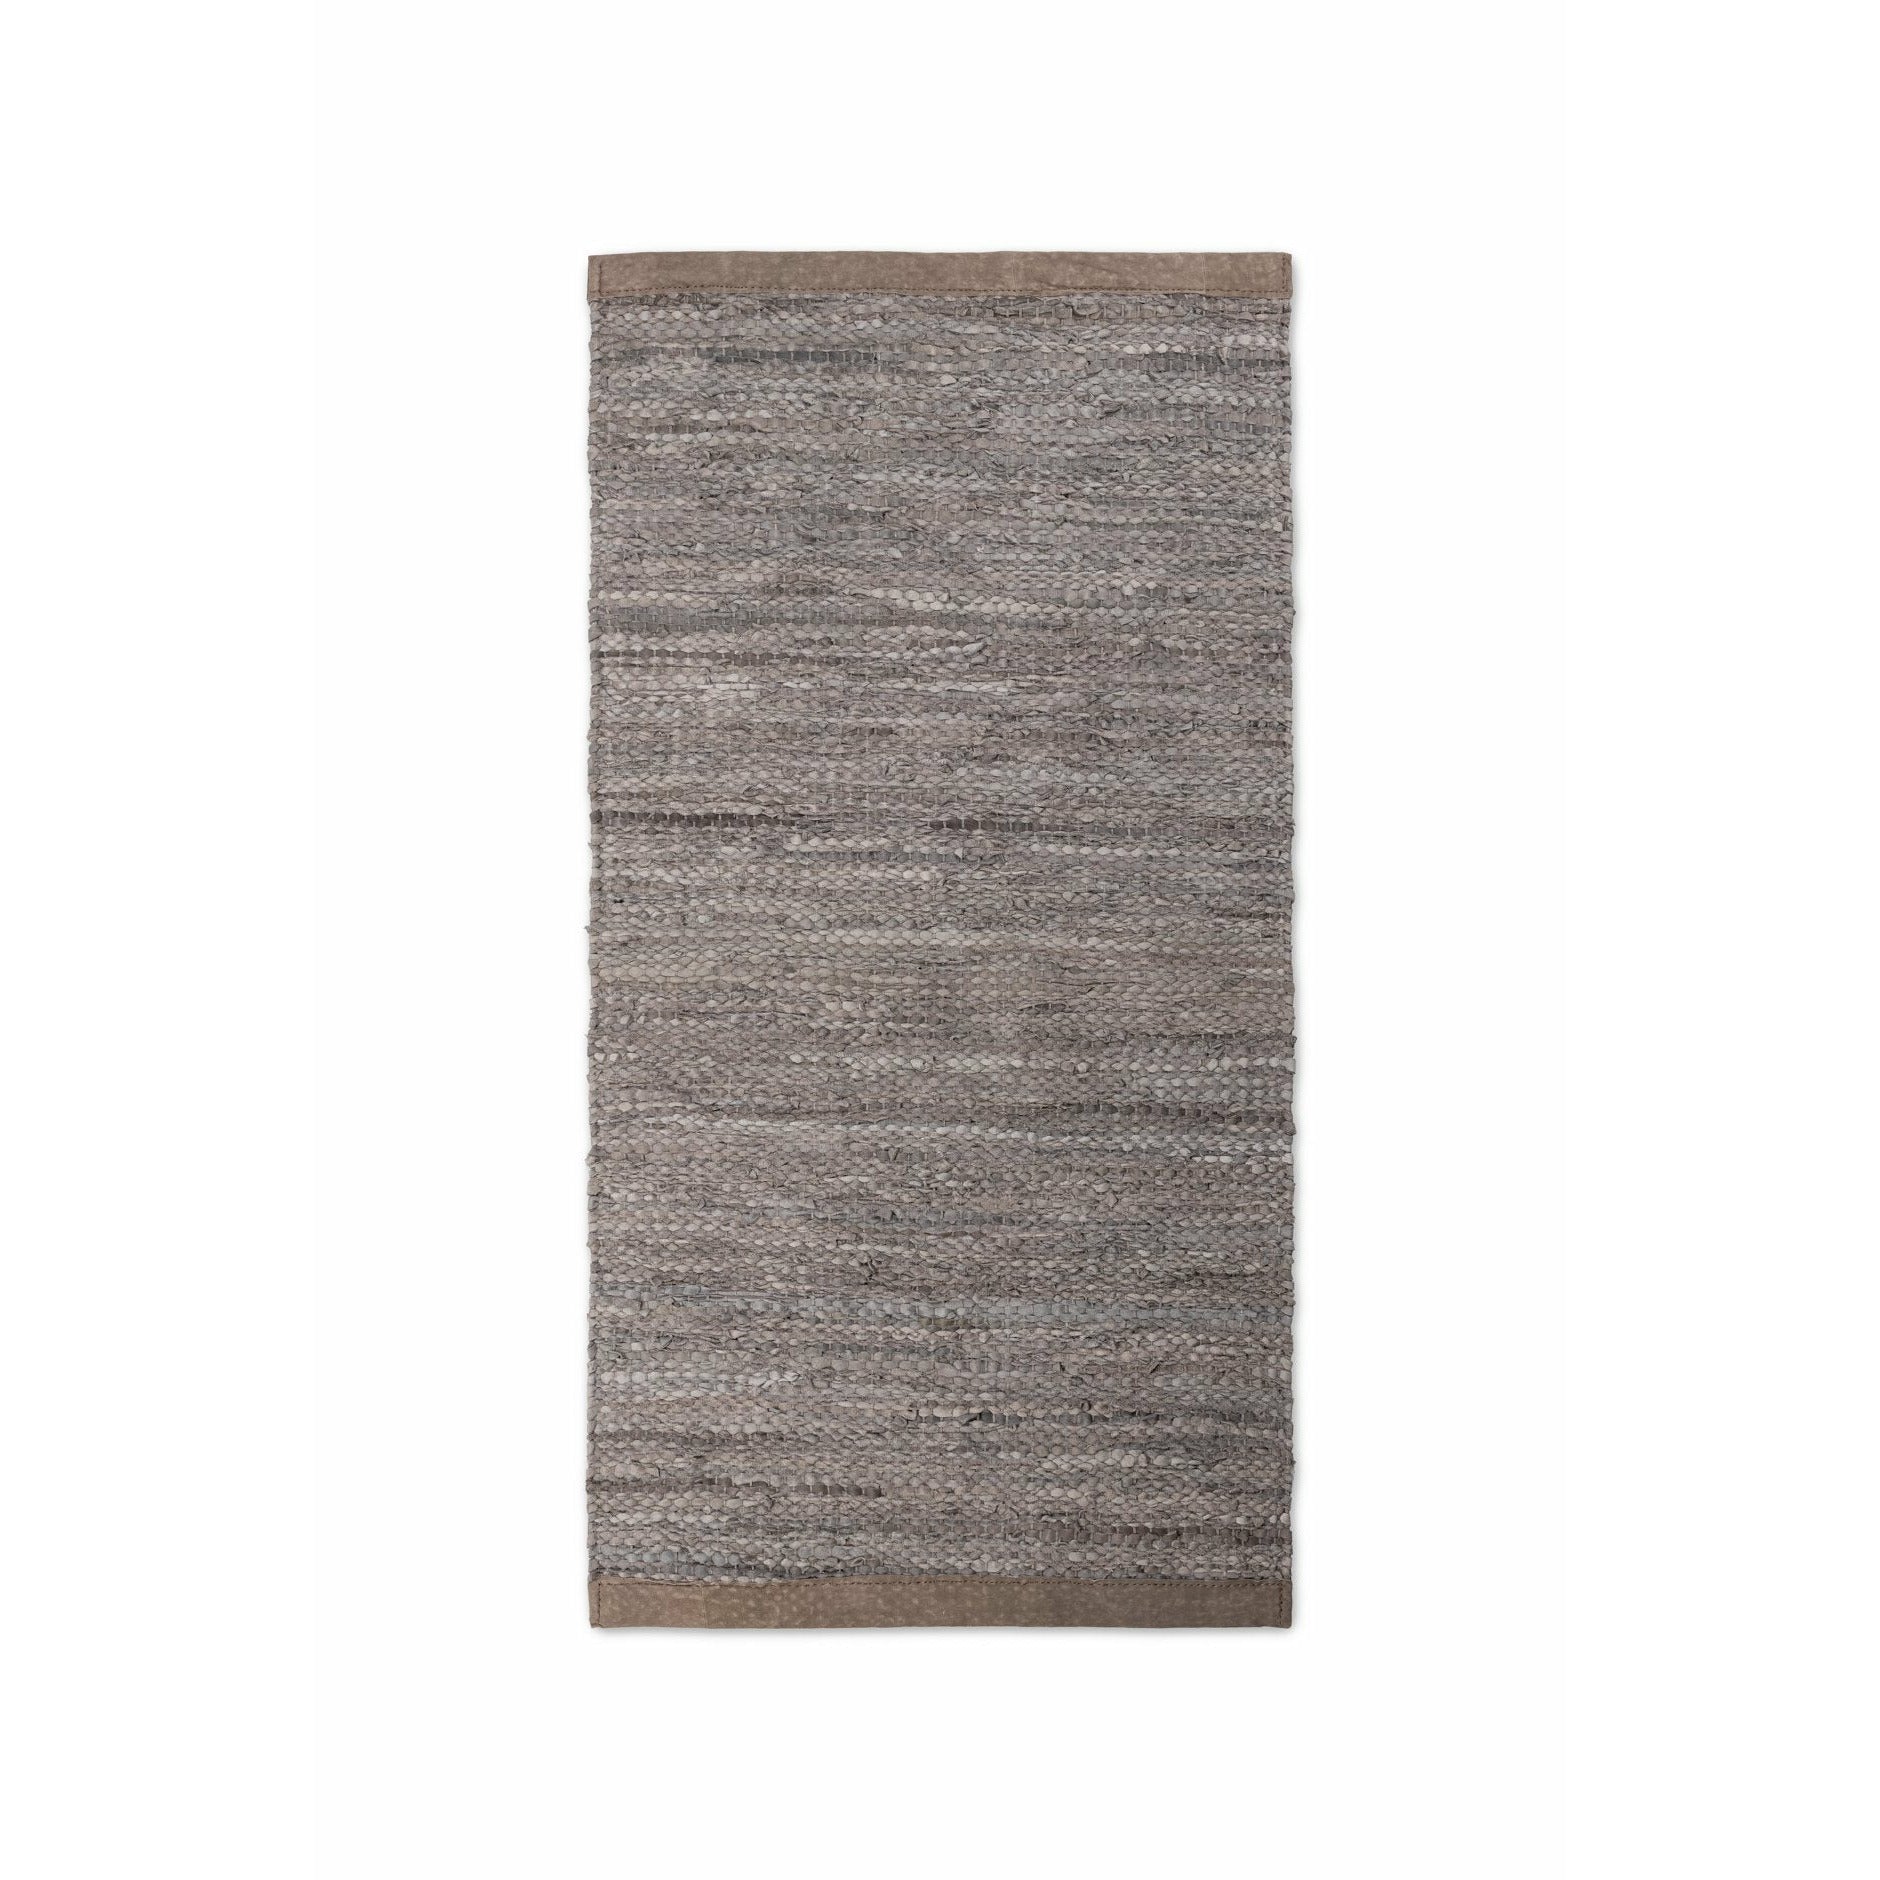 Rug Solid Leder Teppich Holz, 170 X 240 Cm